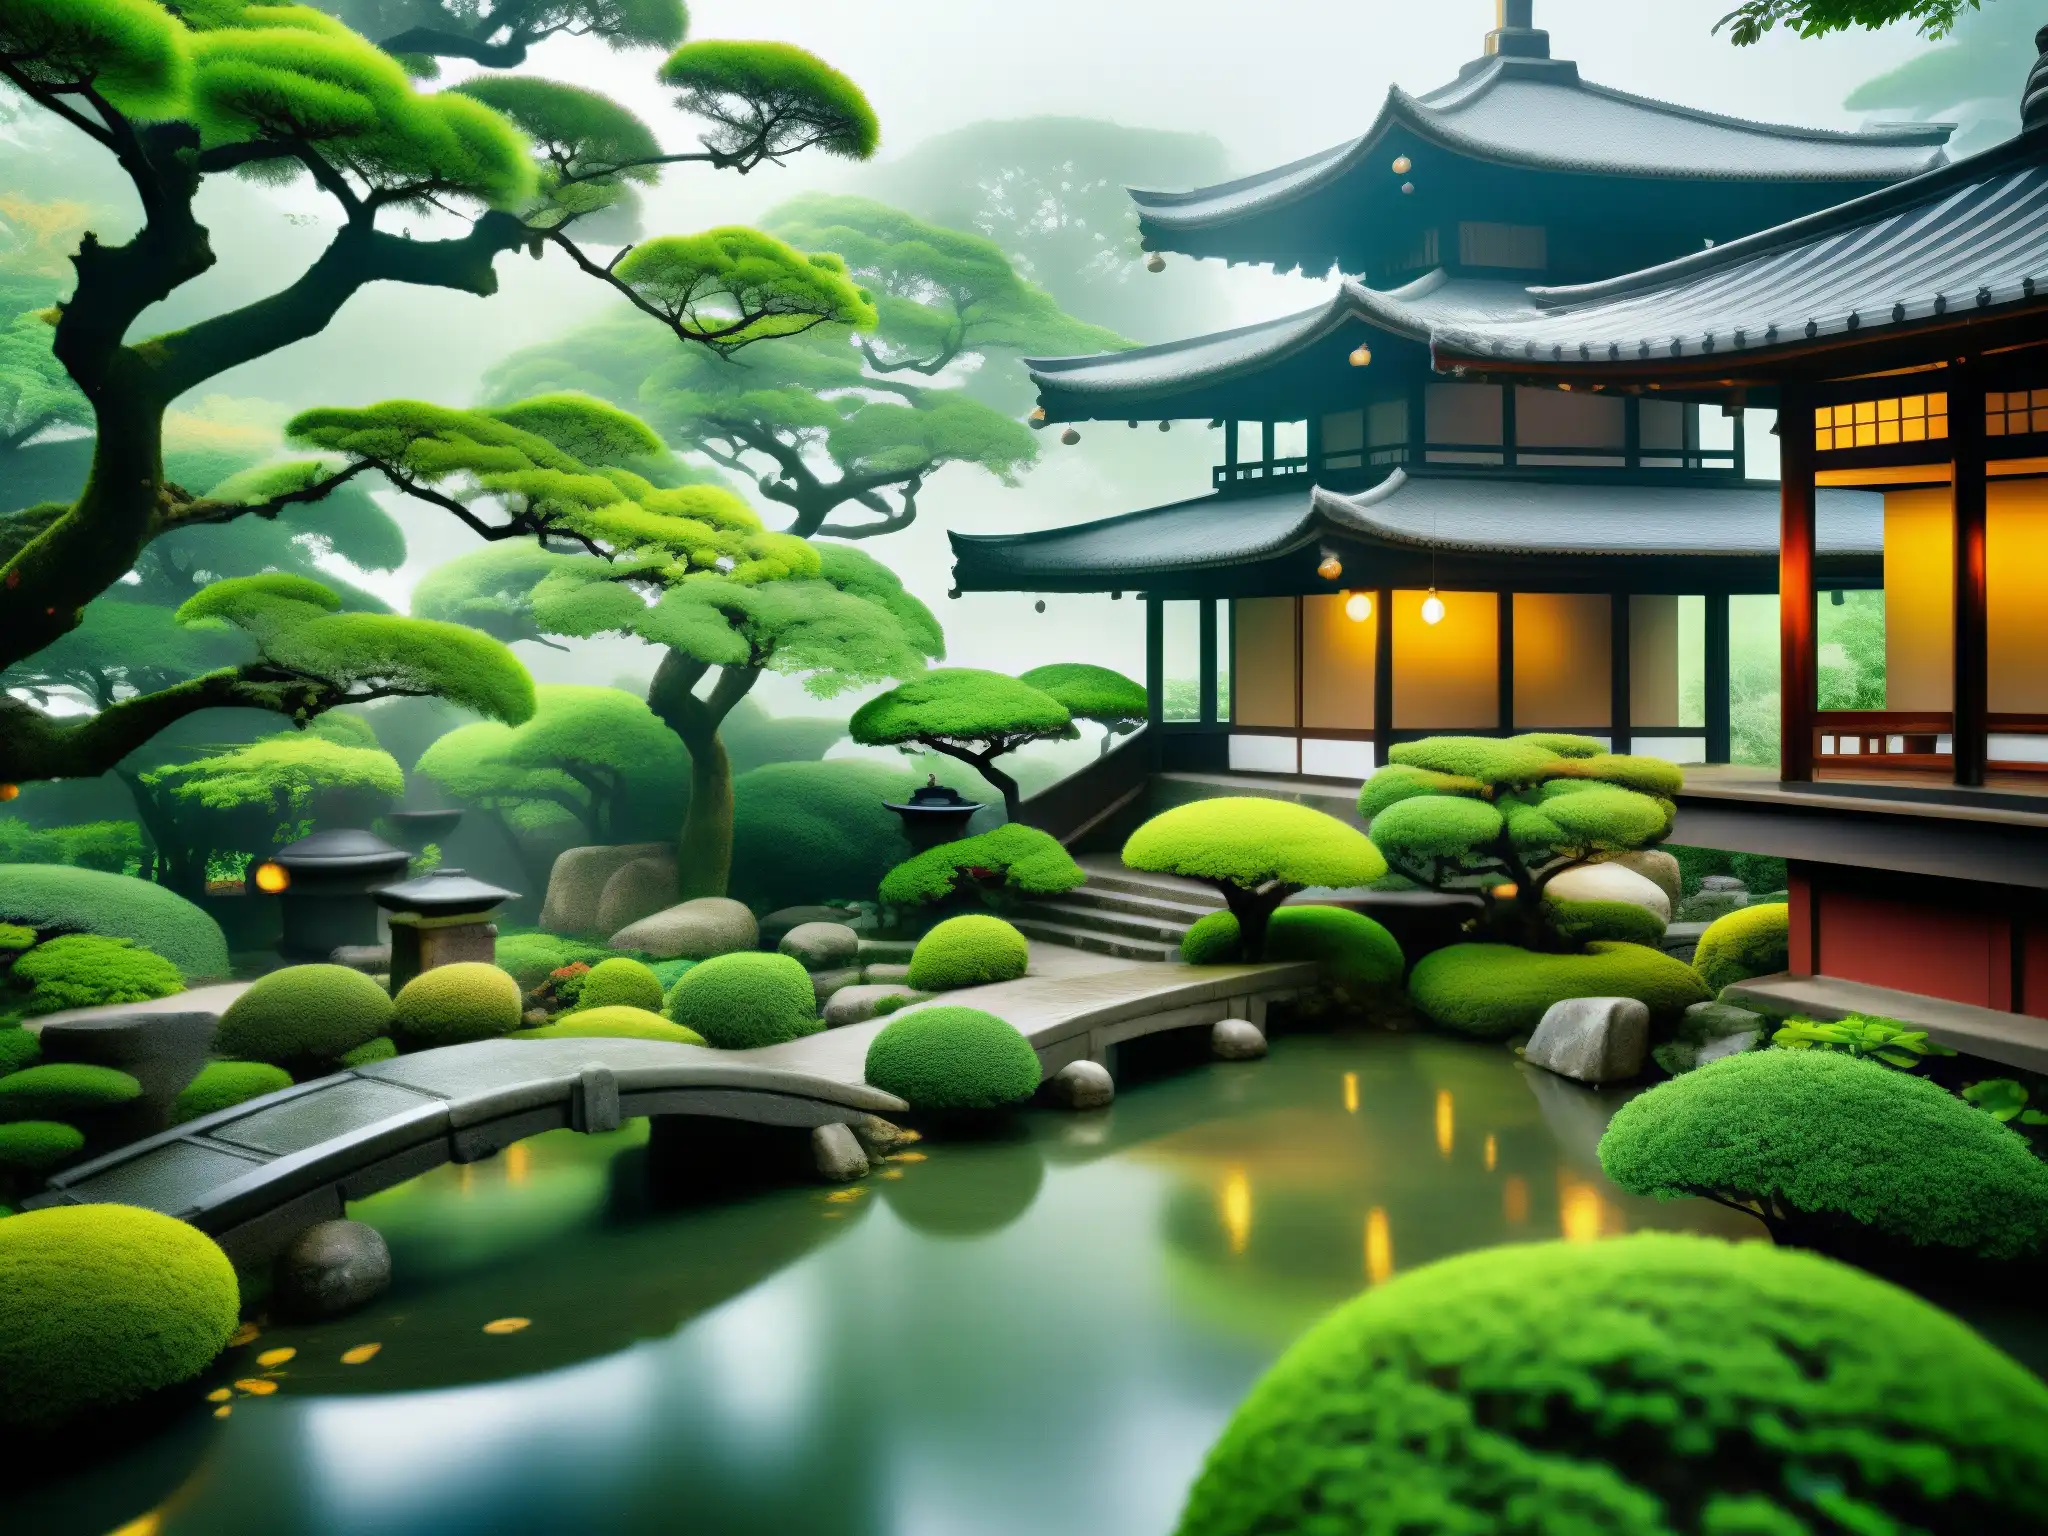 Jardín japonés en la niebla con piedras antiguas y vegetación exuberante, evocando la misteriosa mitología de las AmeOnna